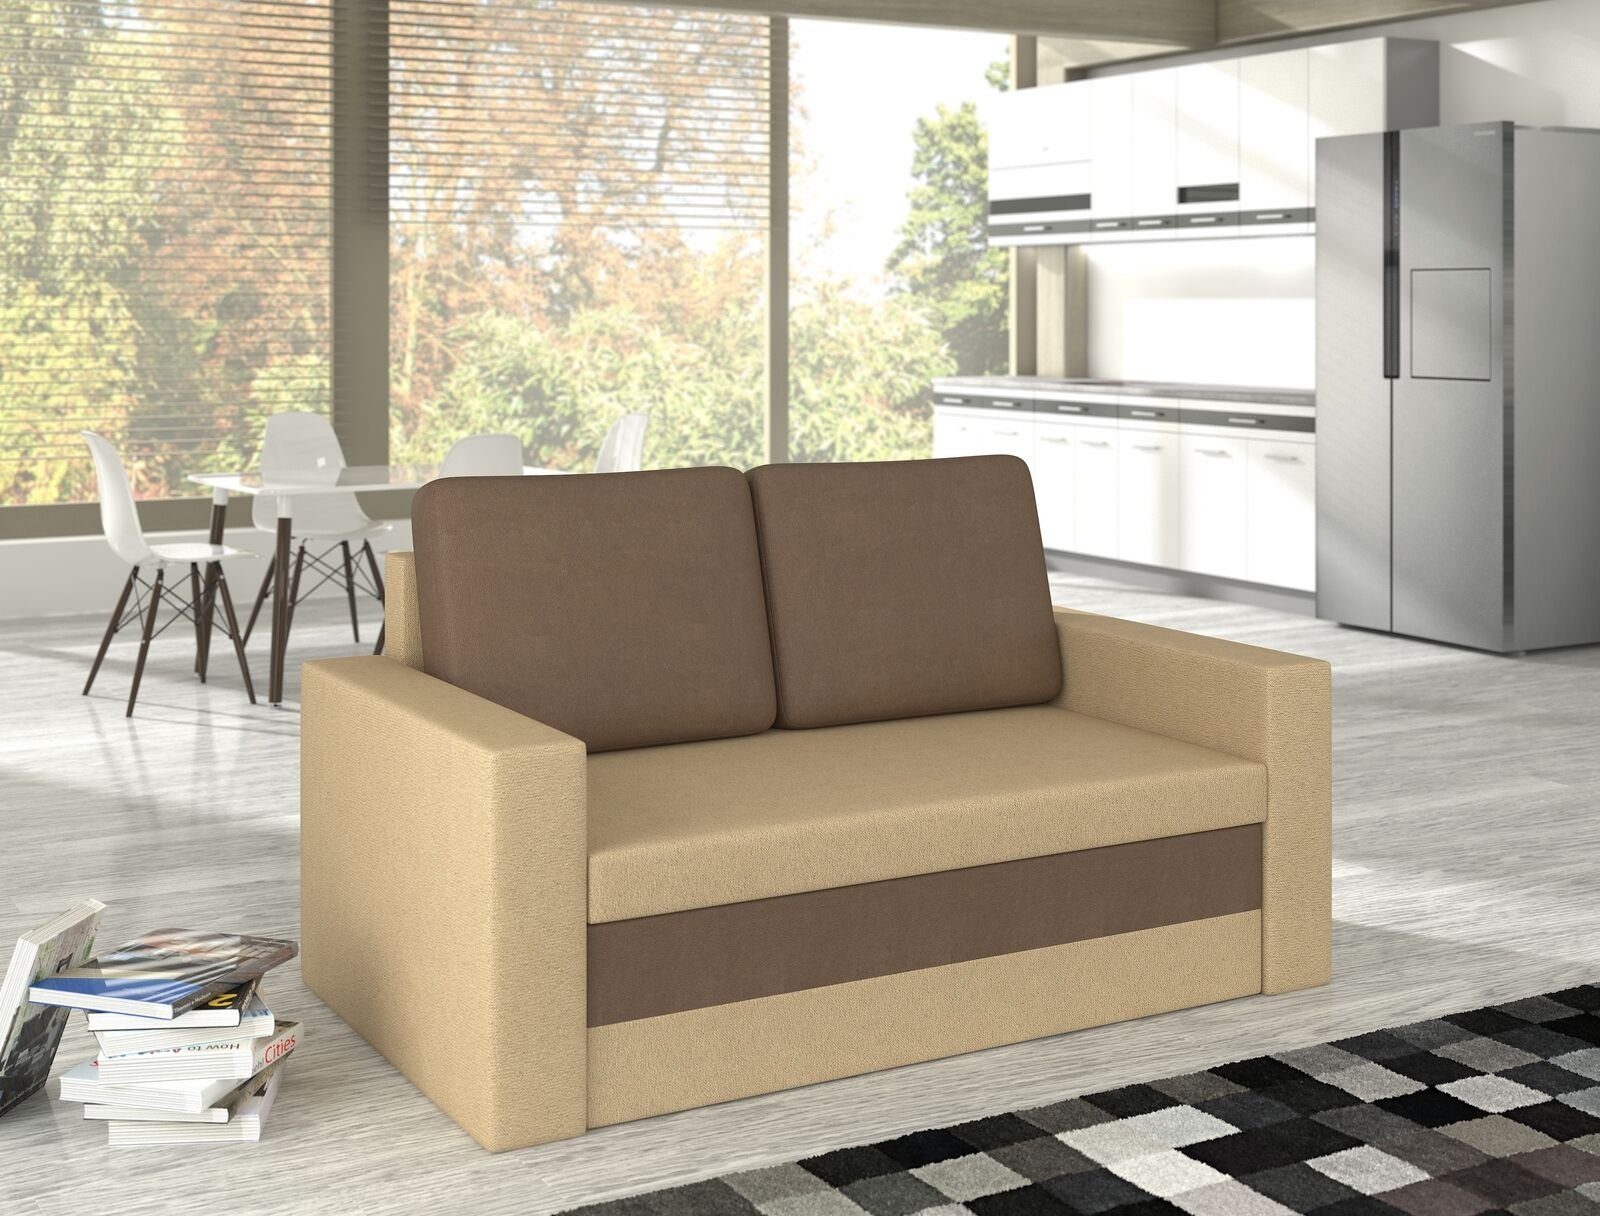 JVmoebel Sofa, Design Sofa Wave 3 Sitzer Bettfunktion Couch Polster Schlafsofa Hellbraun / Dunkelbraun